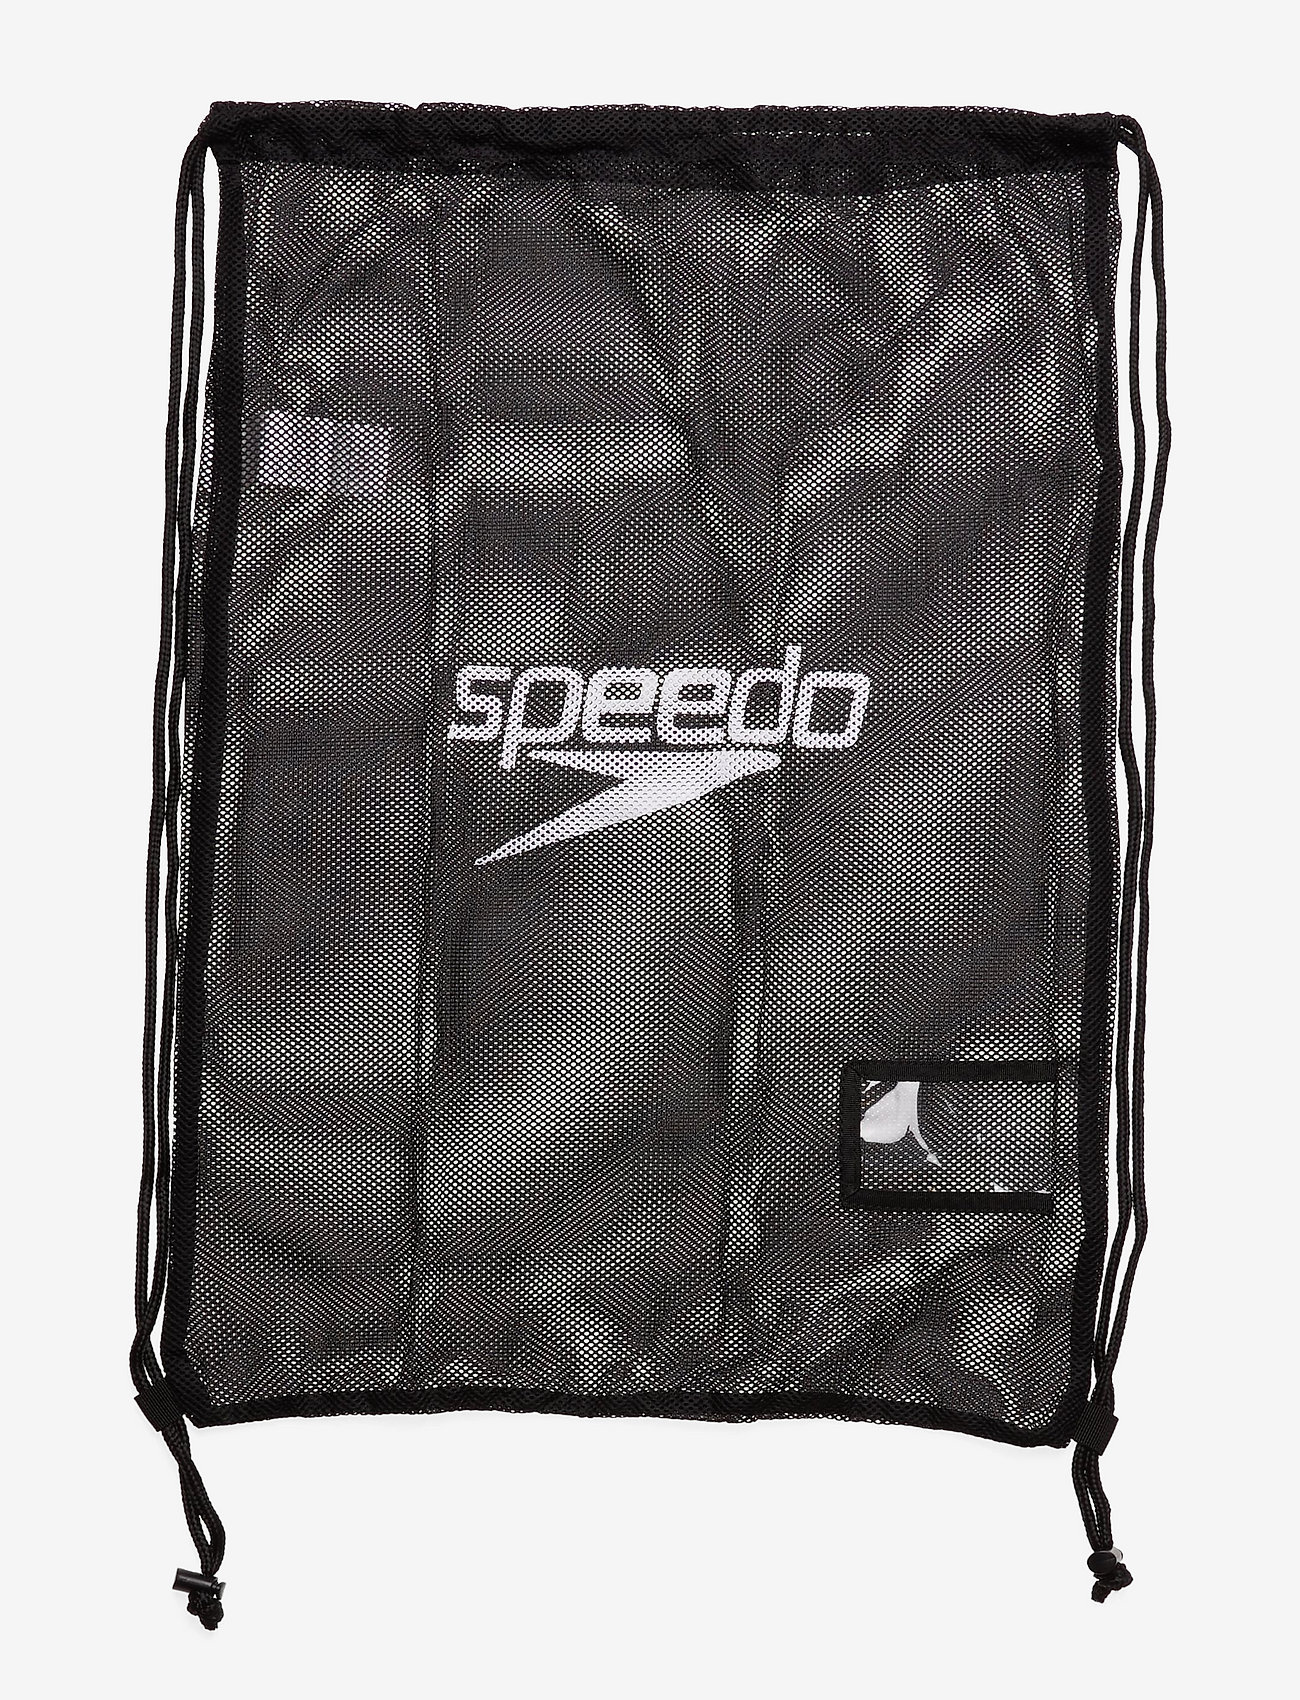 Speedo - Equip Mesh Bag XU - laagste prijzen - black - 0